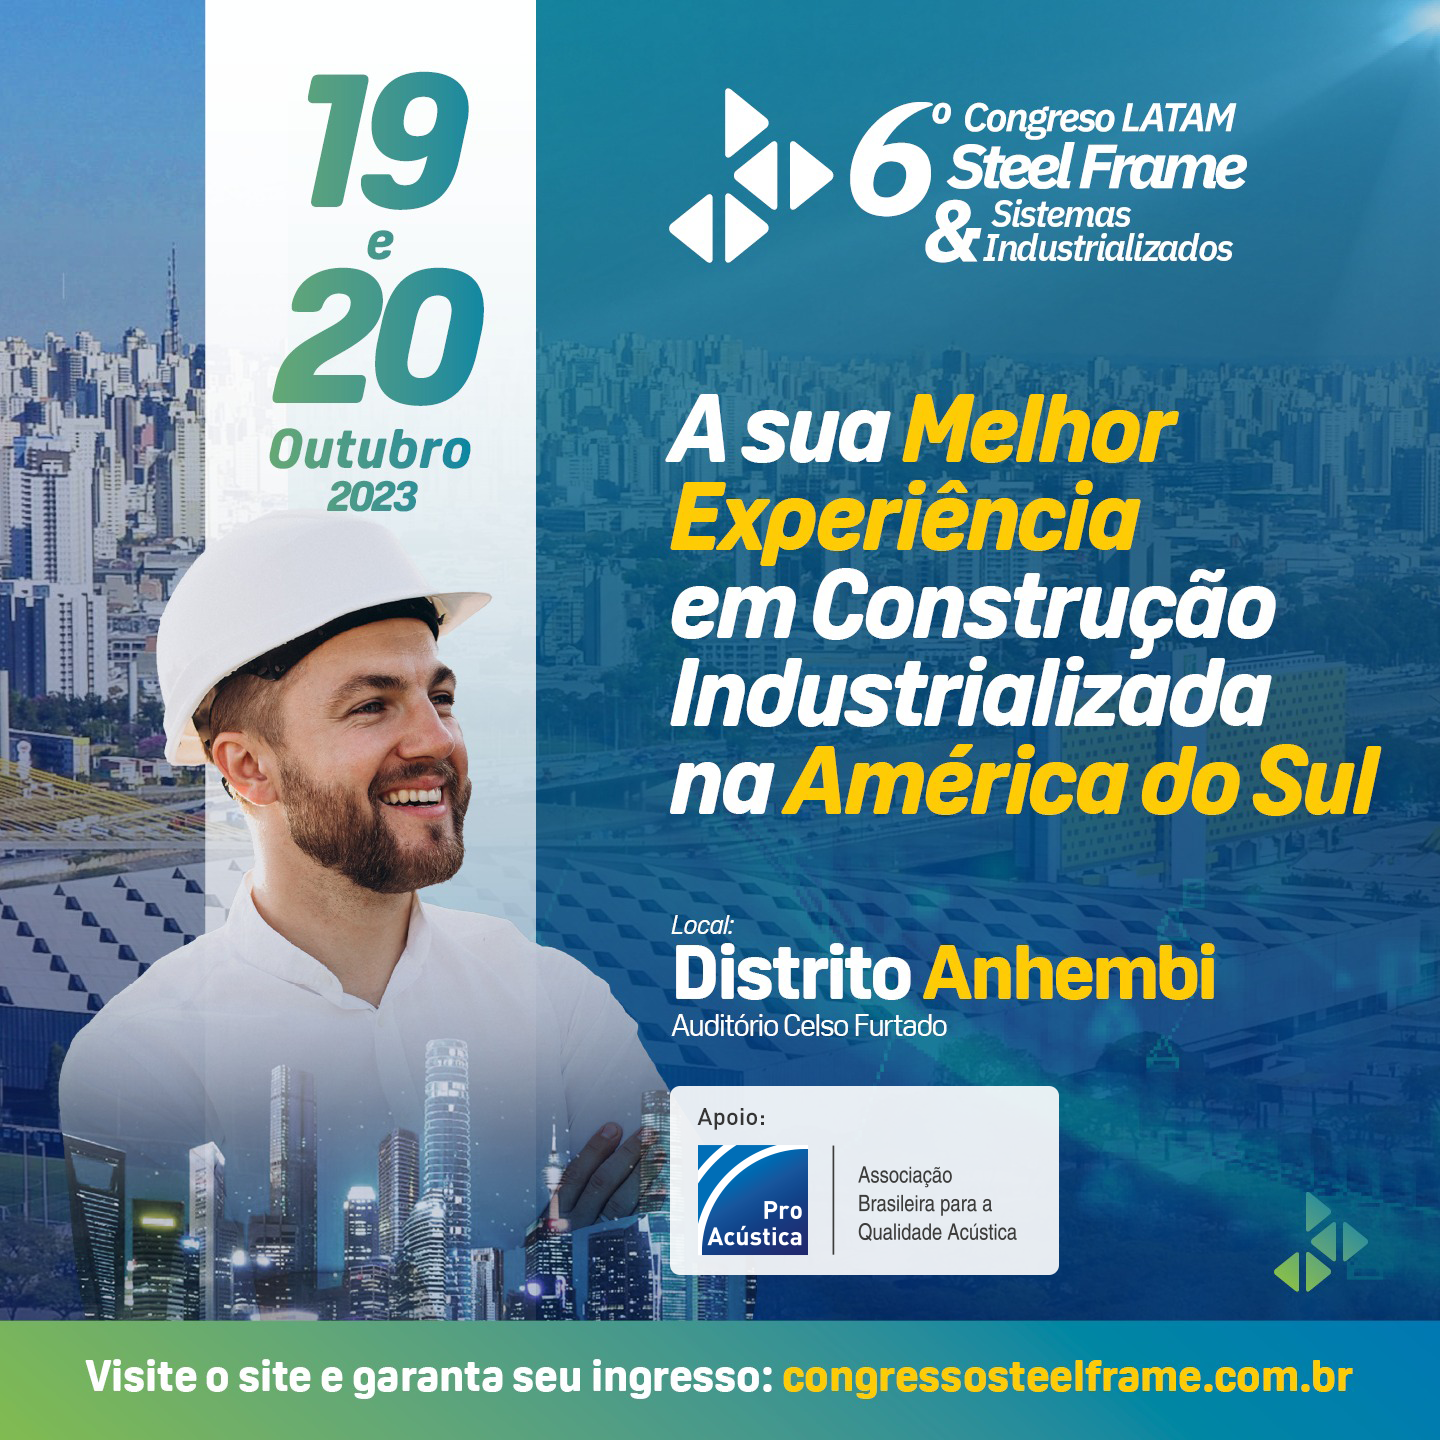 6º Congresso Latino-Americano Steel Frame & Sistemas Construtivos Industrializados